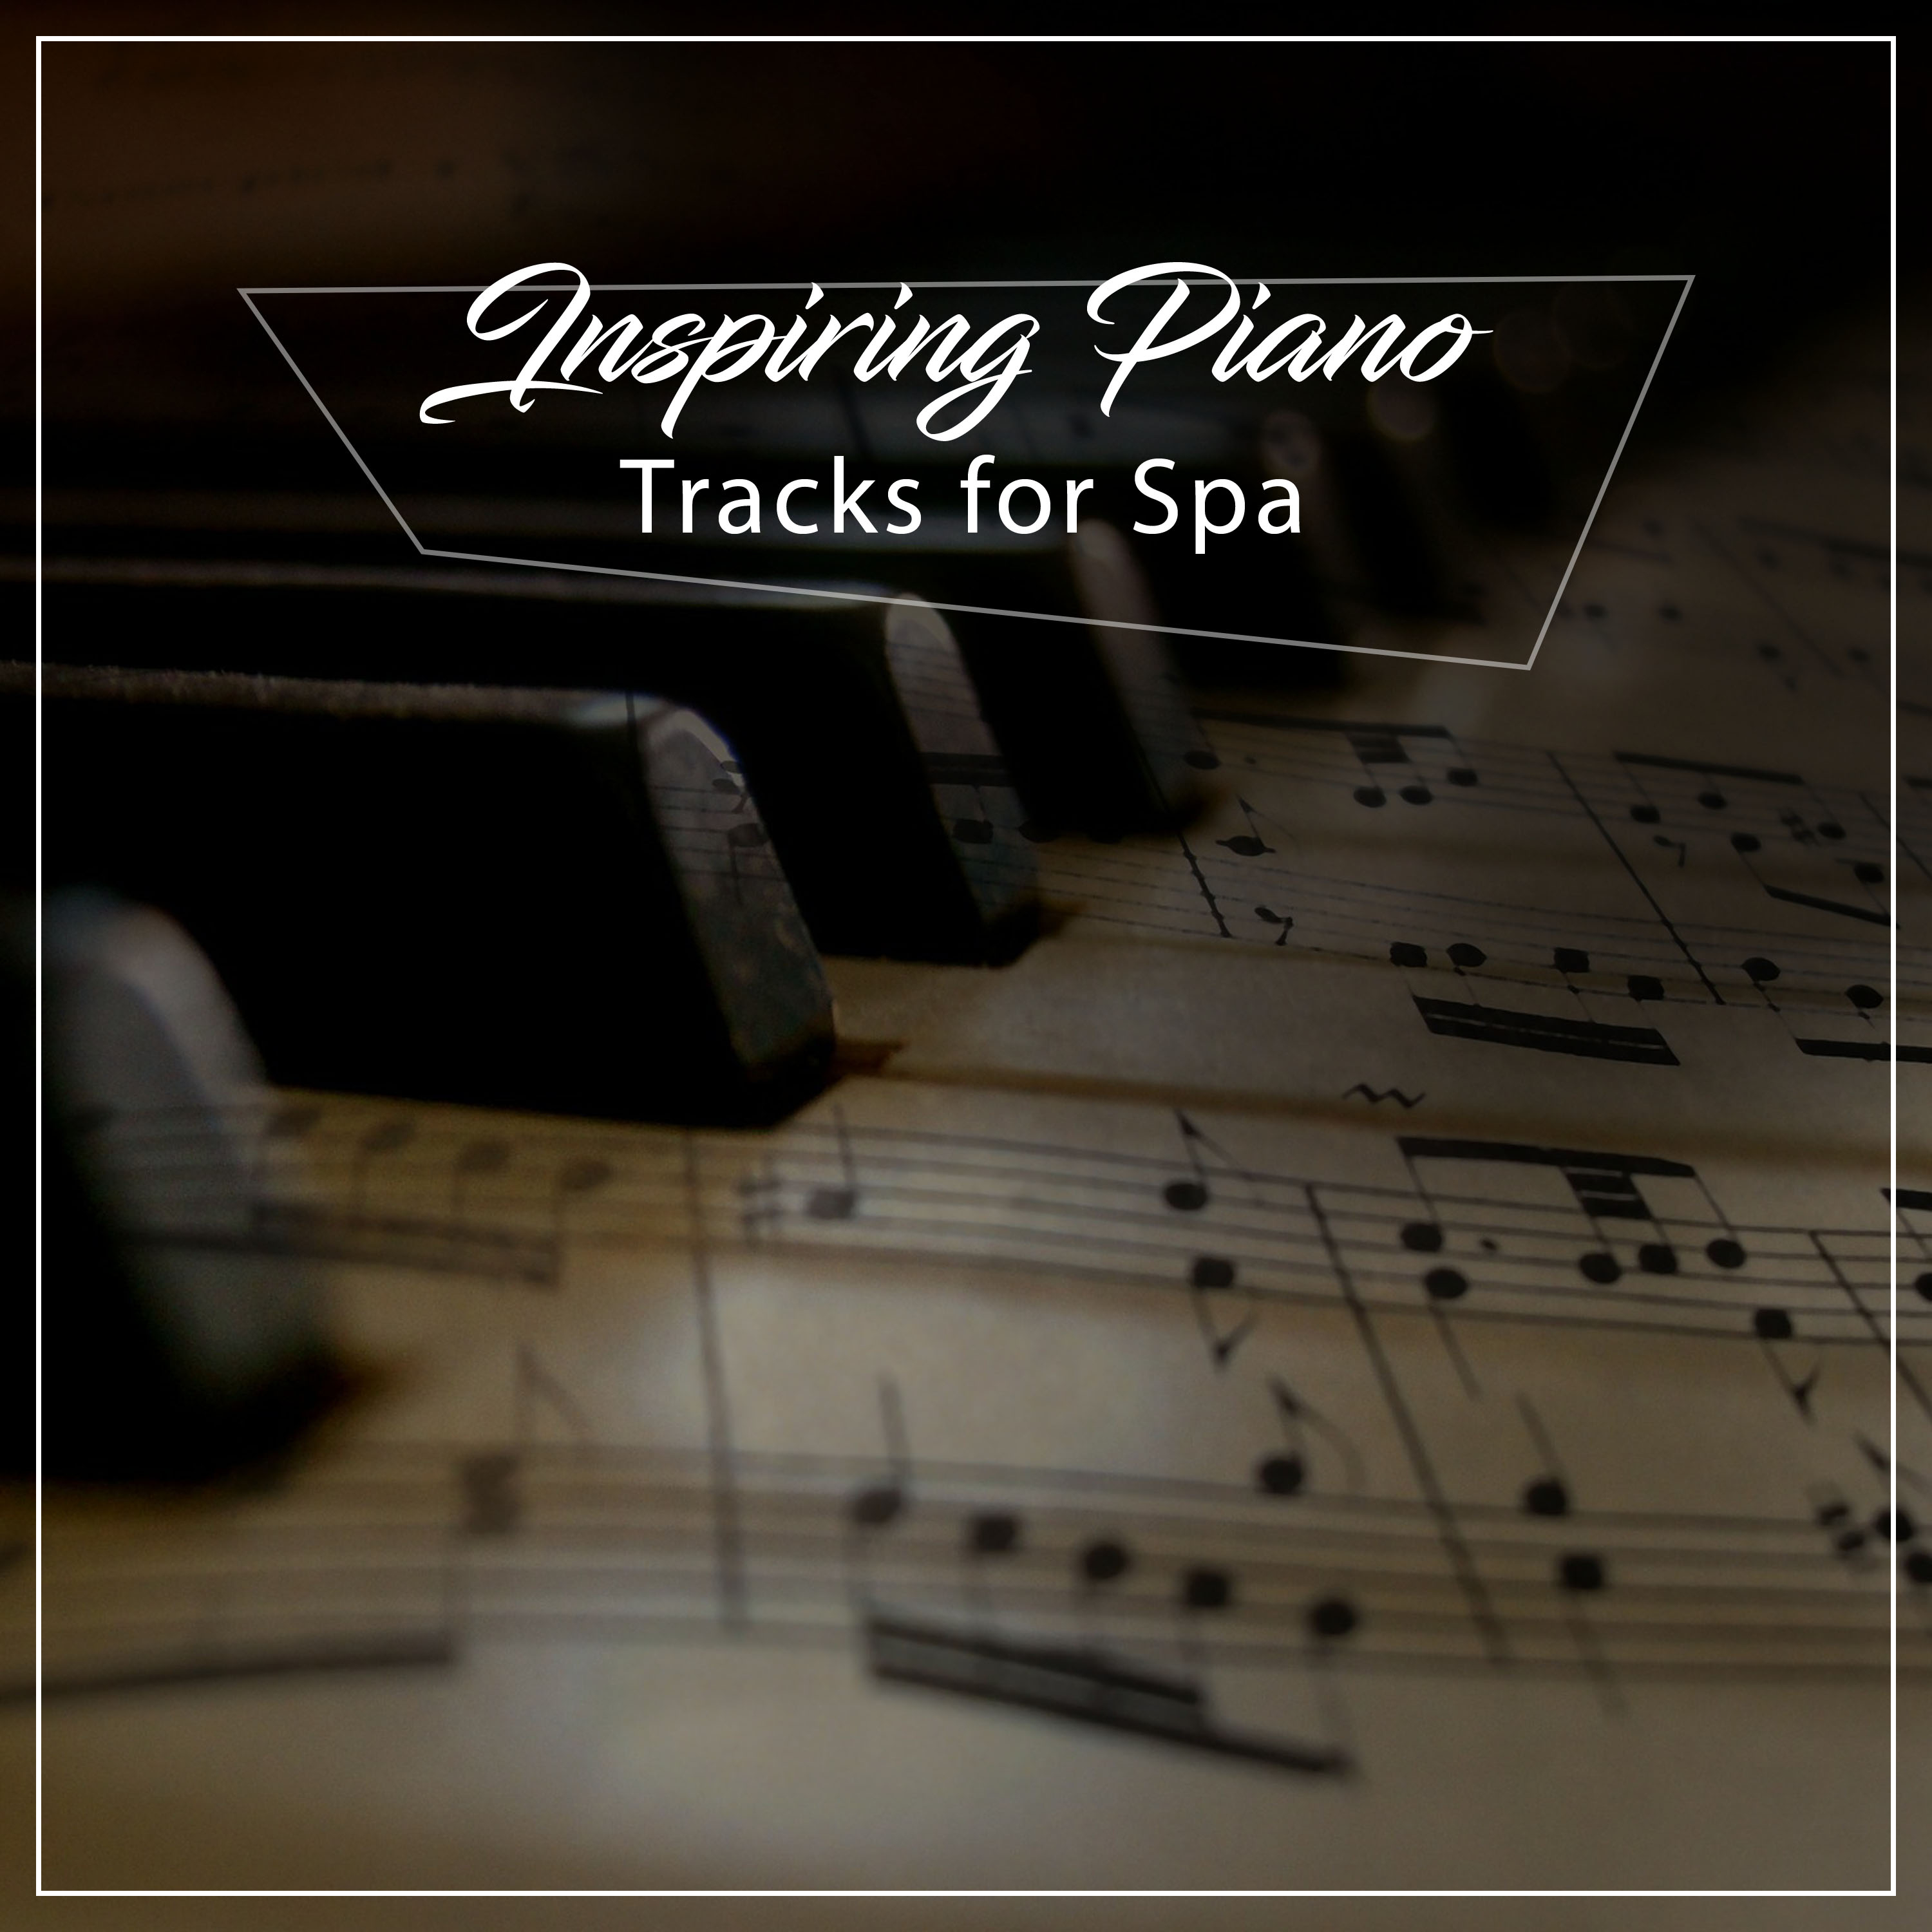 12 Inspiring Piano Tracks for Spa